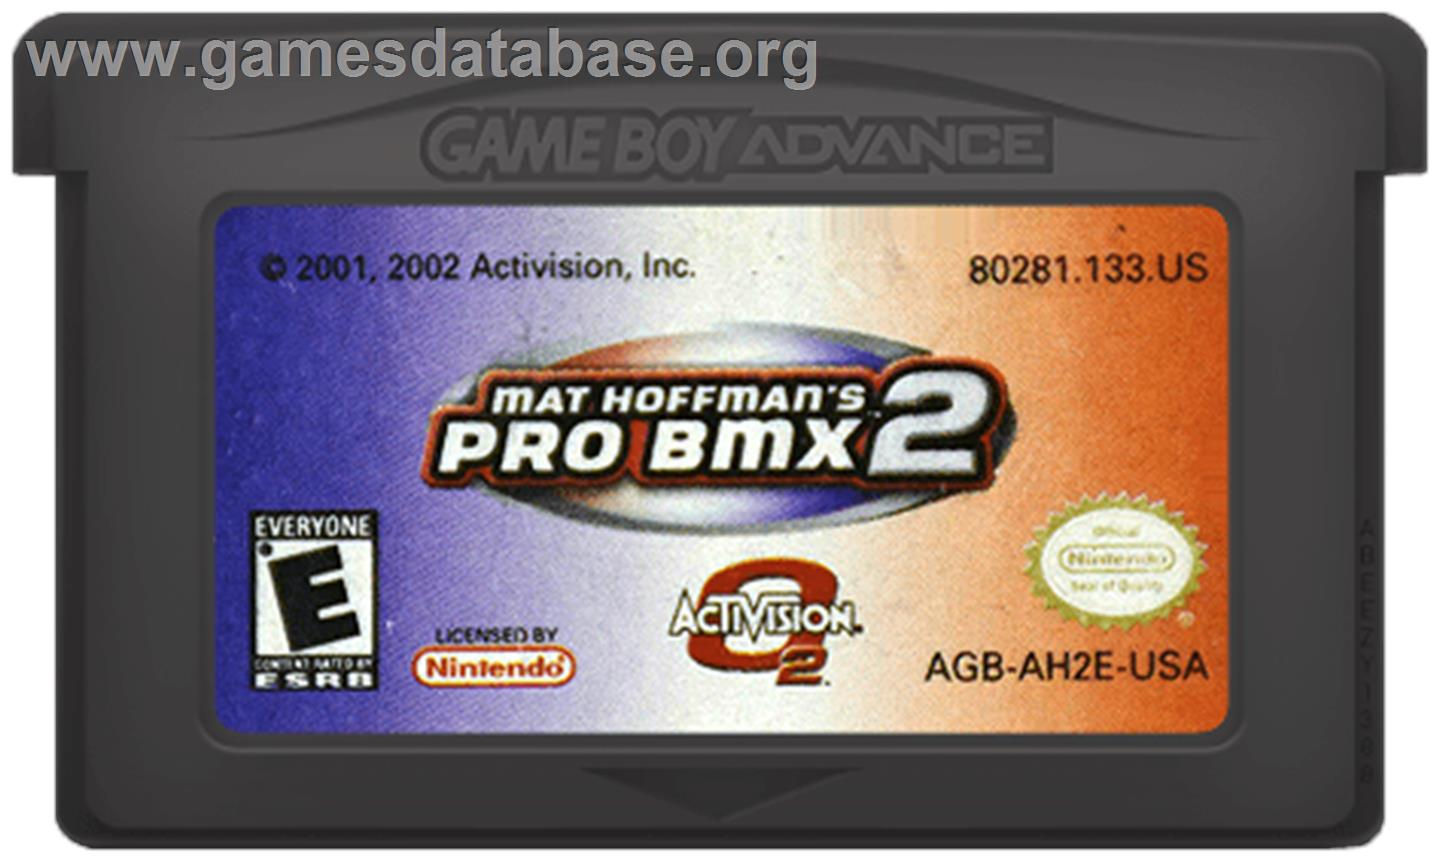 Mat Hoffman's Pro BMX 2 - Nintendo Game Boy Advance - Artwork - Cartridge